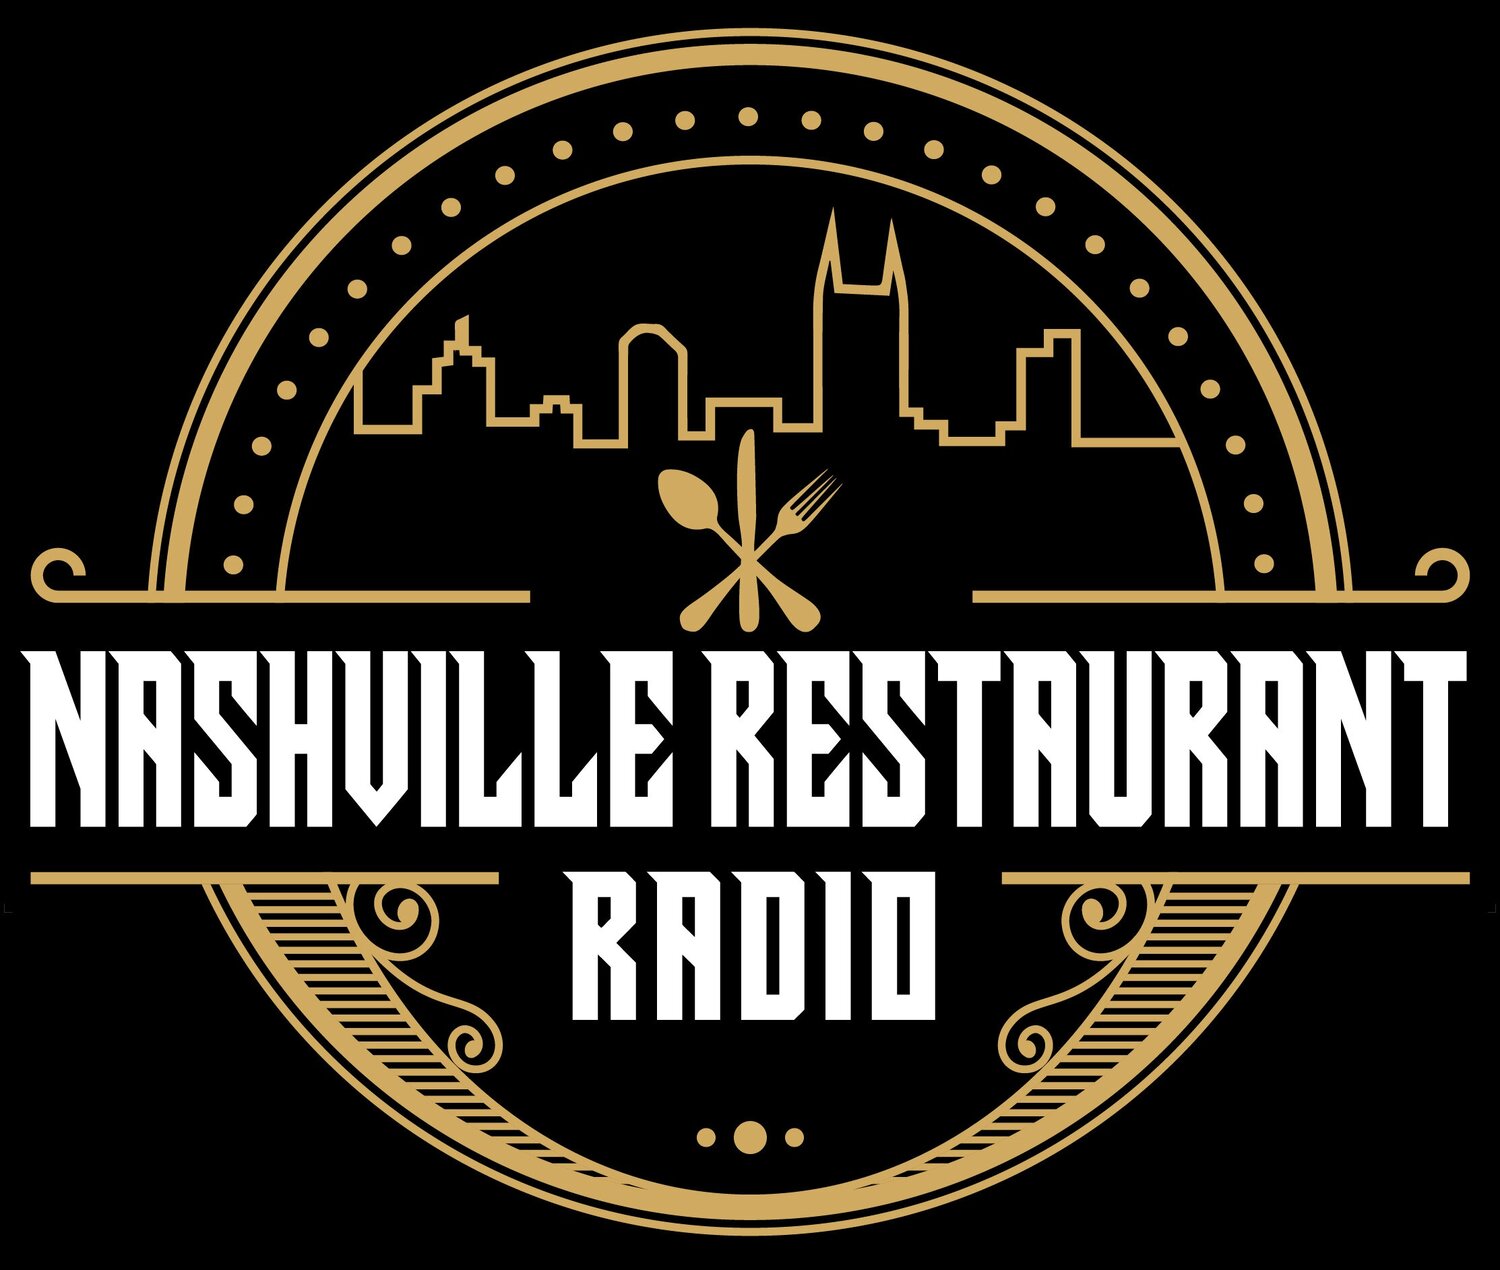 Nashville Restaurant Radio